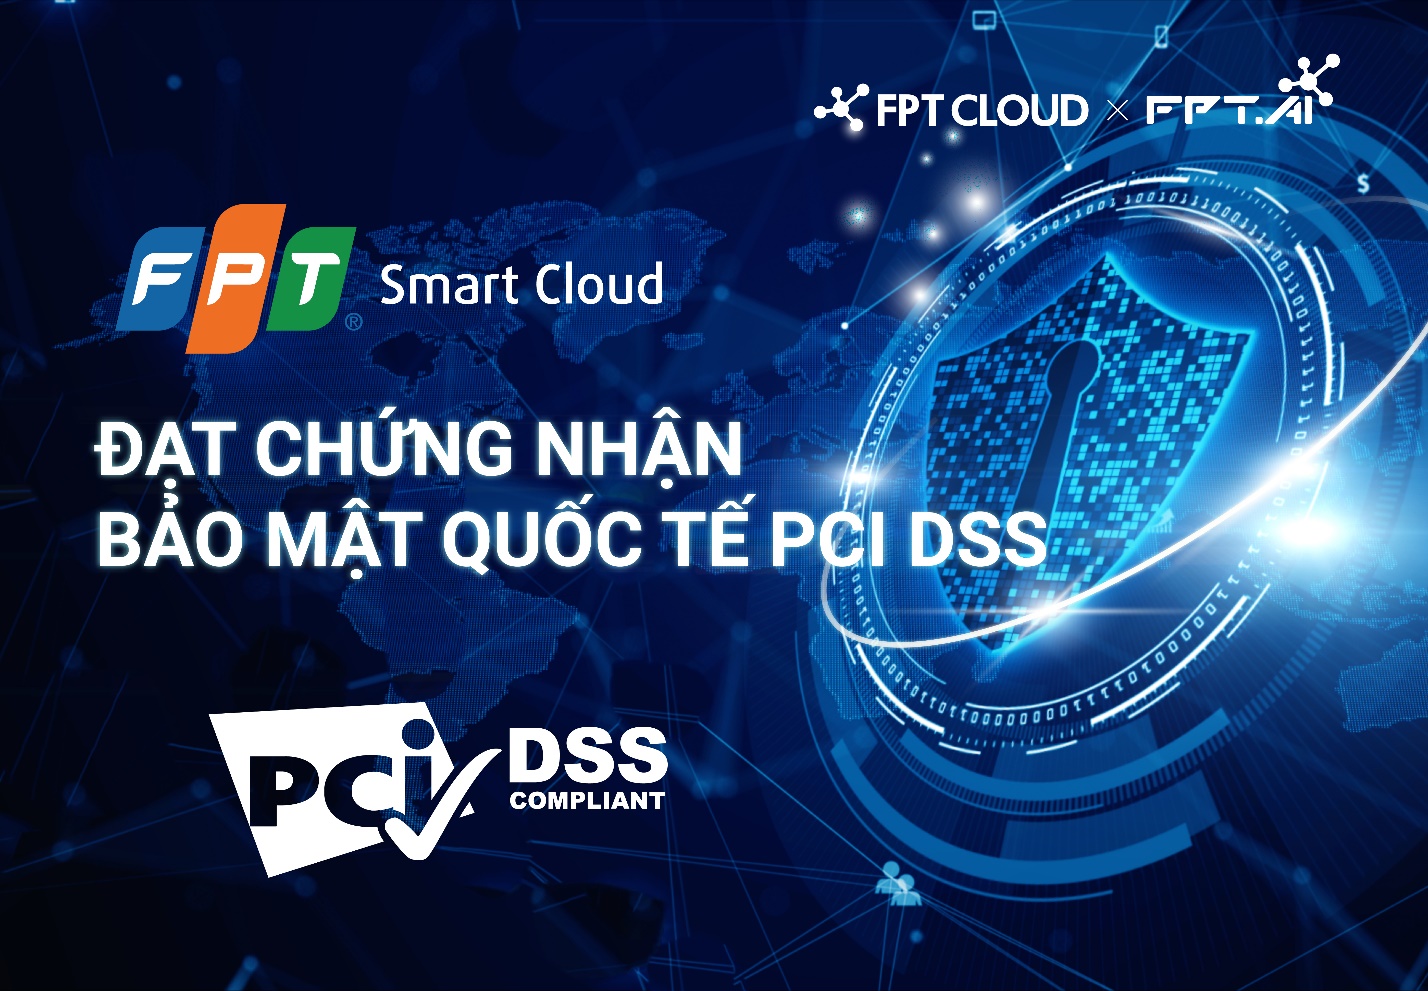 FPT Smart Cloud đạt chứng chỉ Bảo mật Quốc tế PCI DSS mức độ cao nhất [HOT]